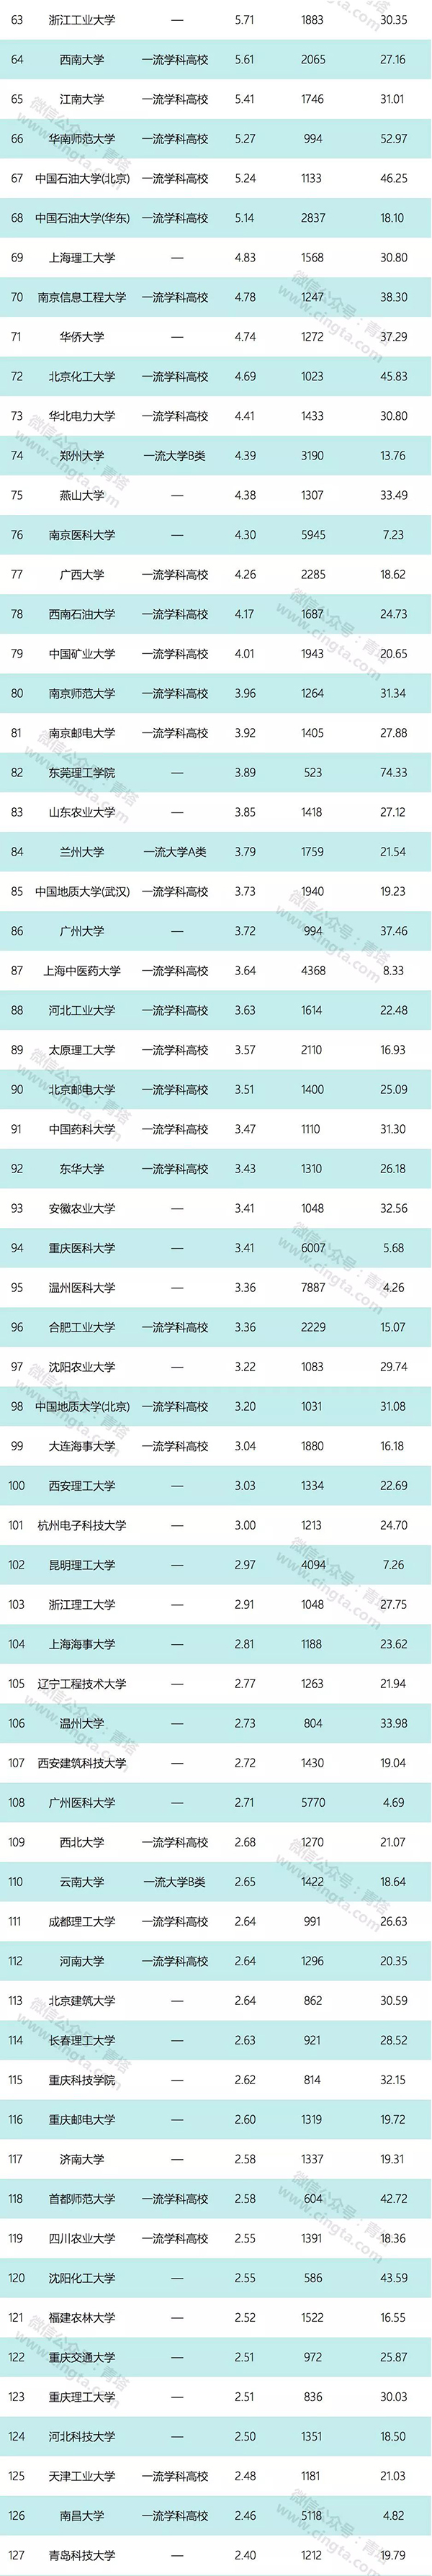 中国高校年度科技经费排名